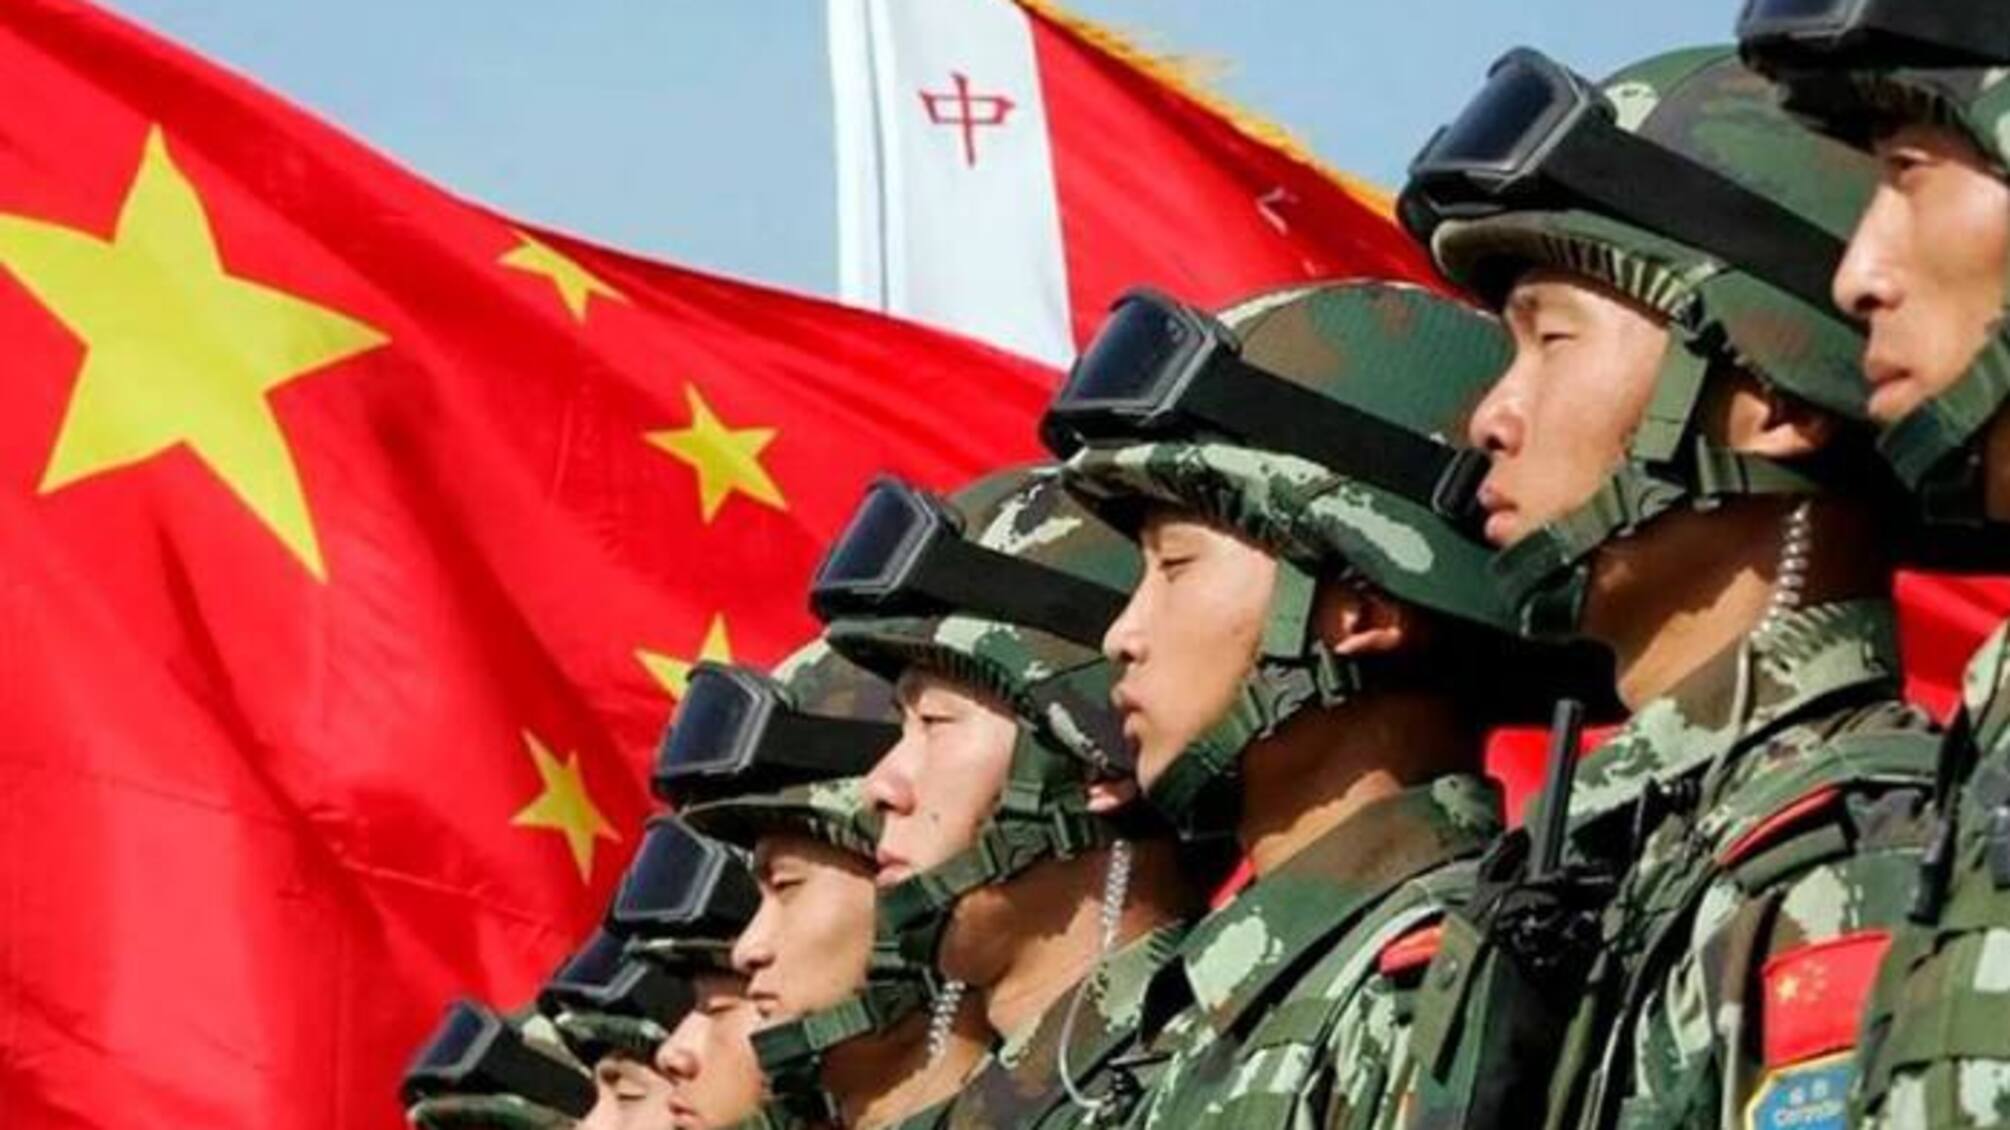  Разведка США узнала о масштабной коррупции в армии Китая